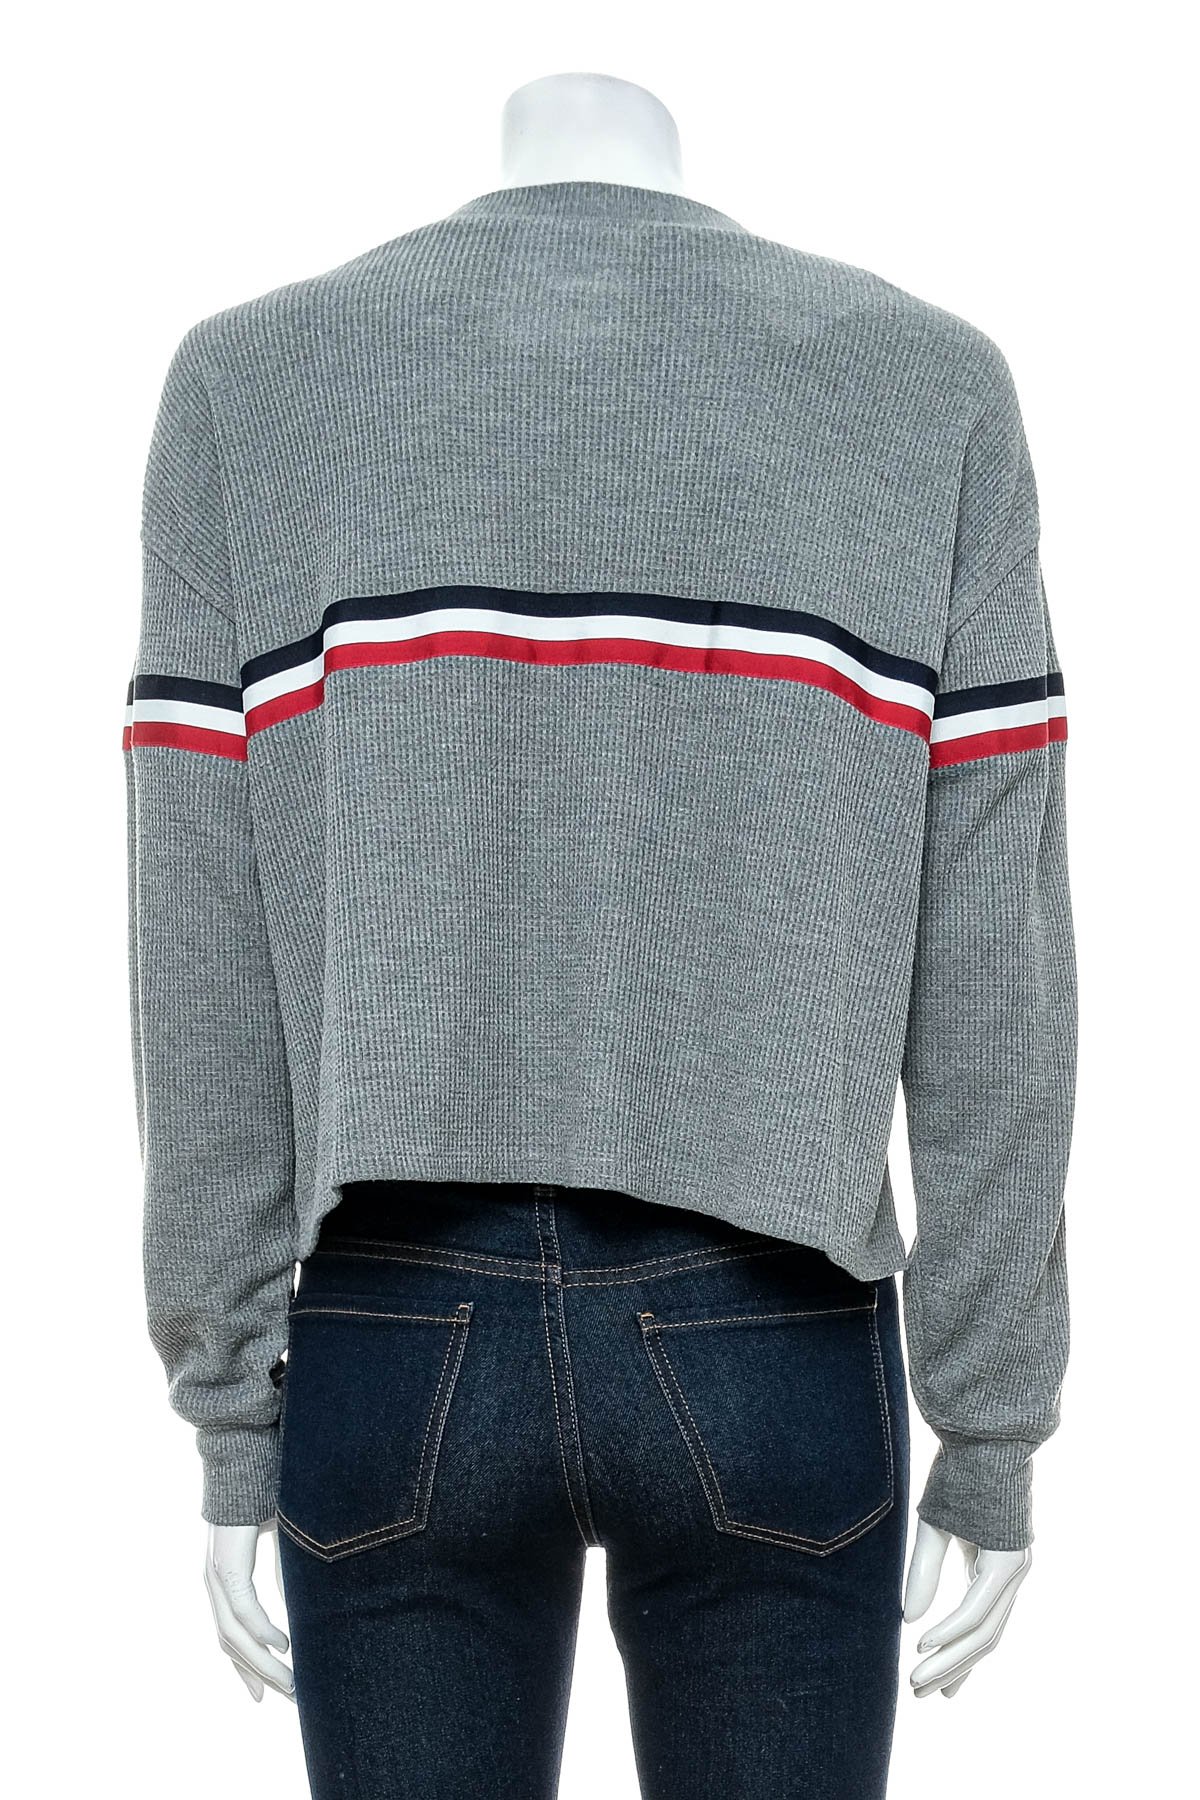 Women's sweater - Hollister - 1